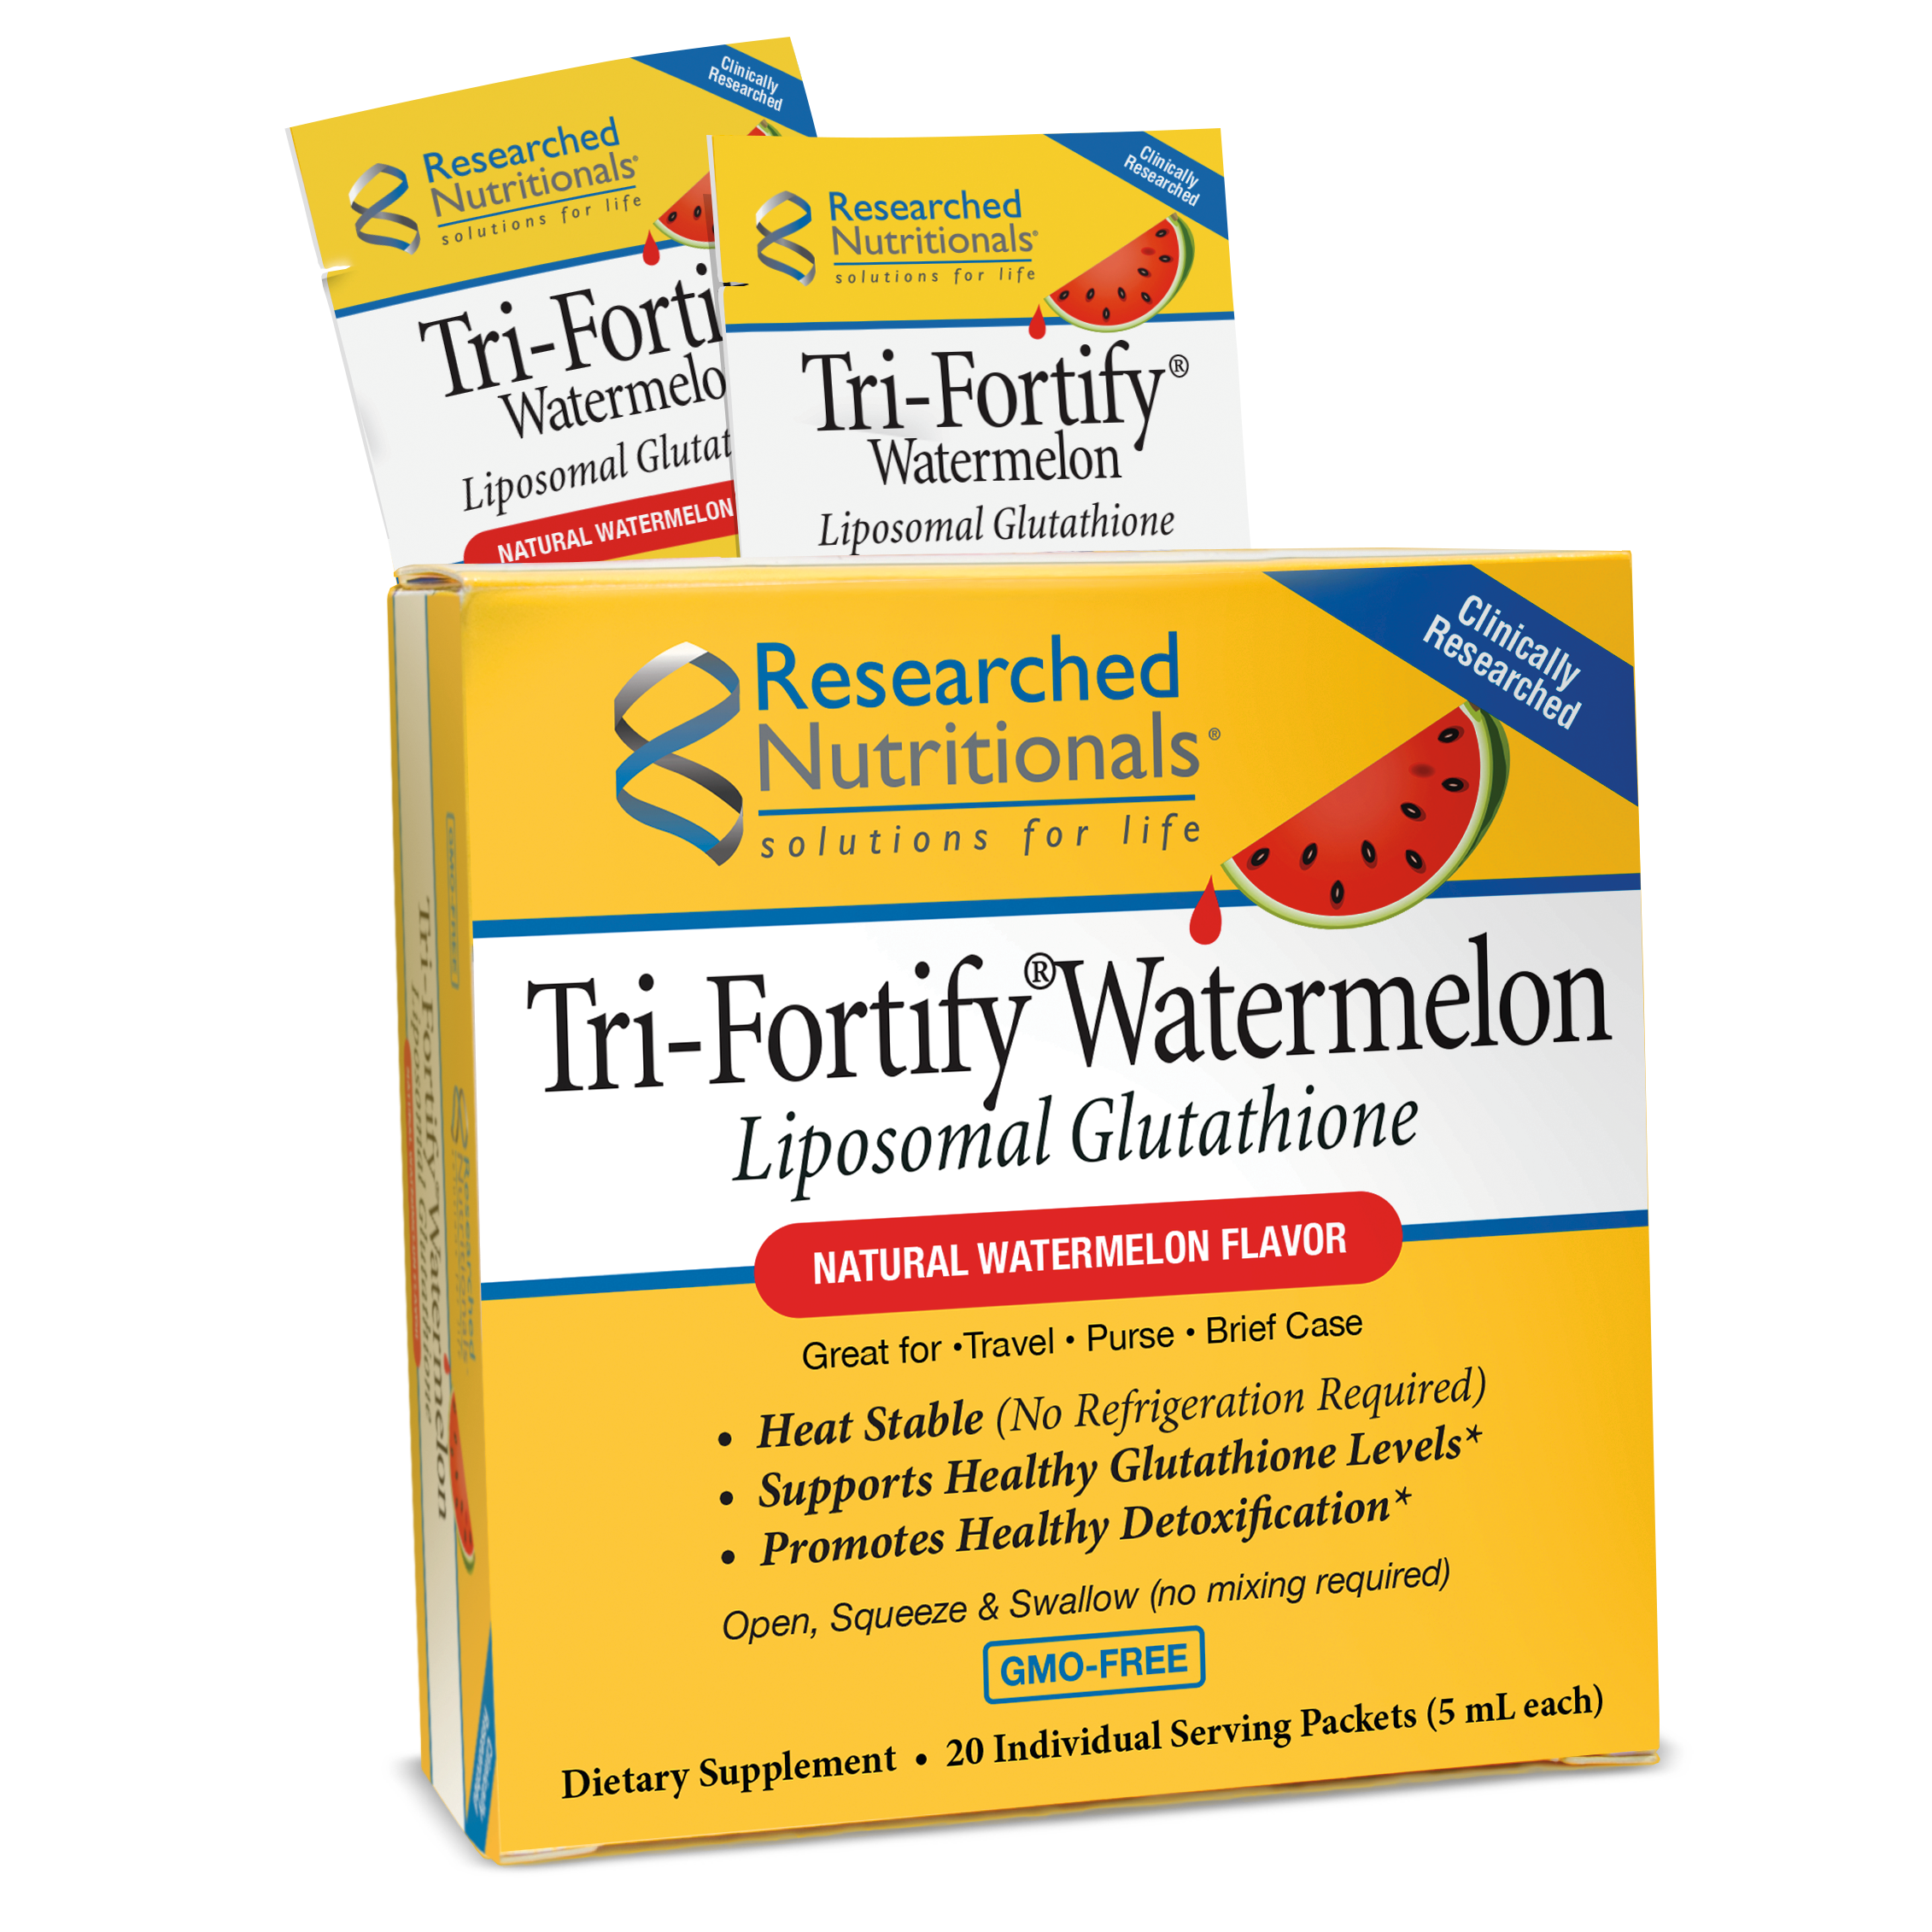 TRI-FORTIFY® LIPOSOMAL GLUTATHIONE TRAVEL PACKETS